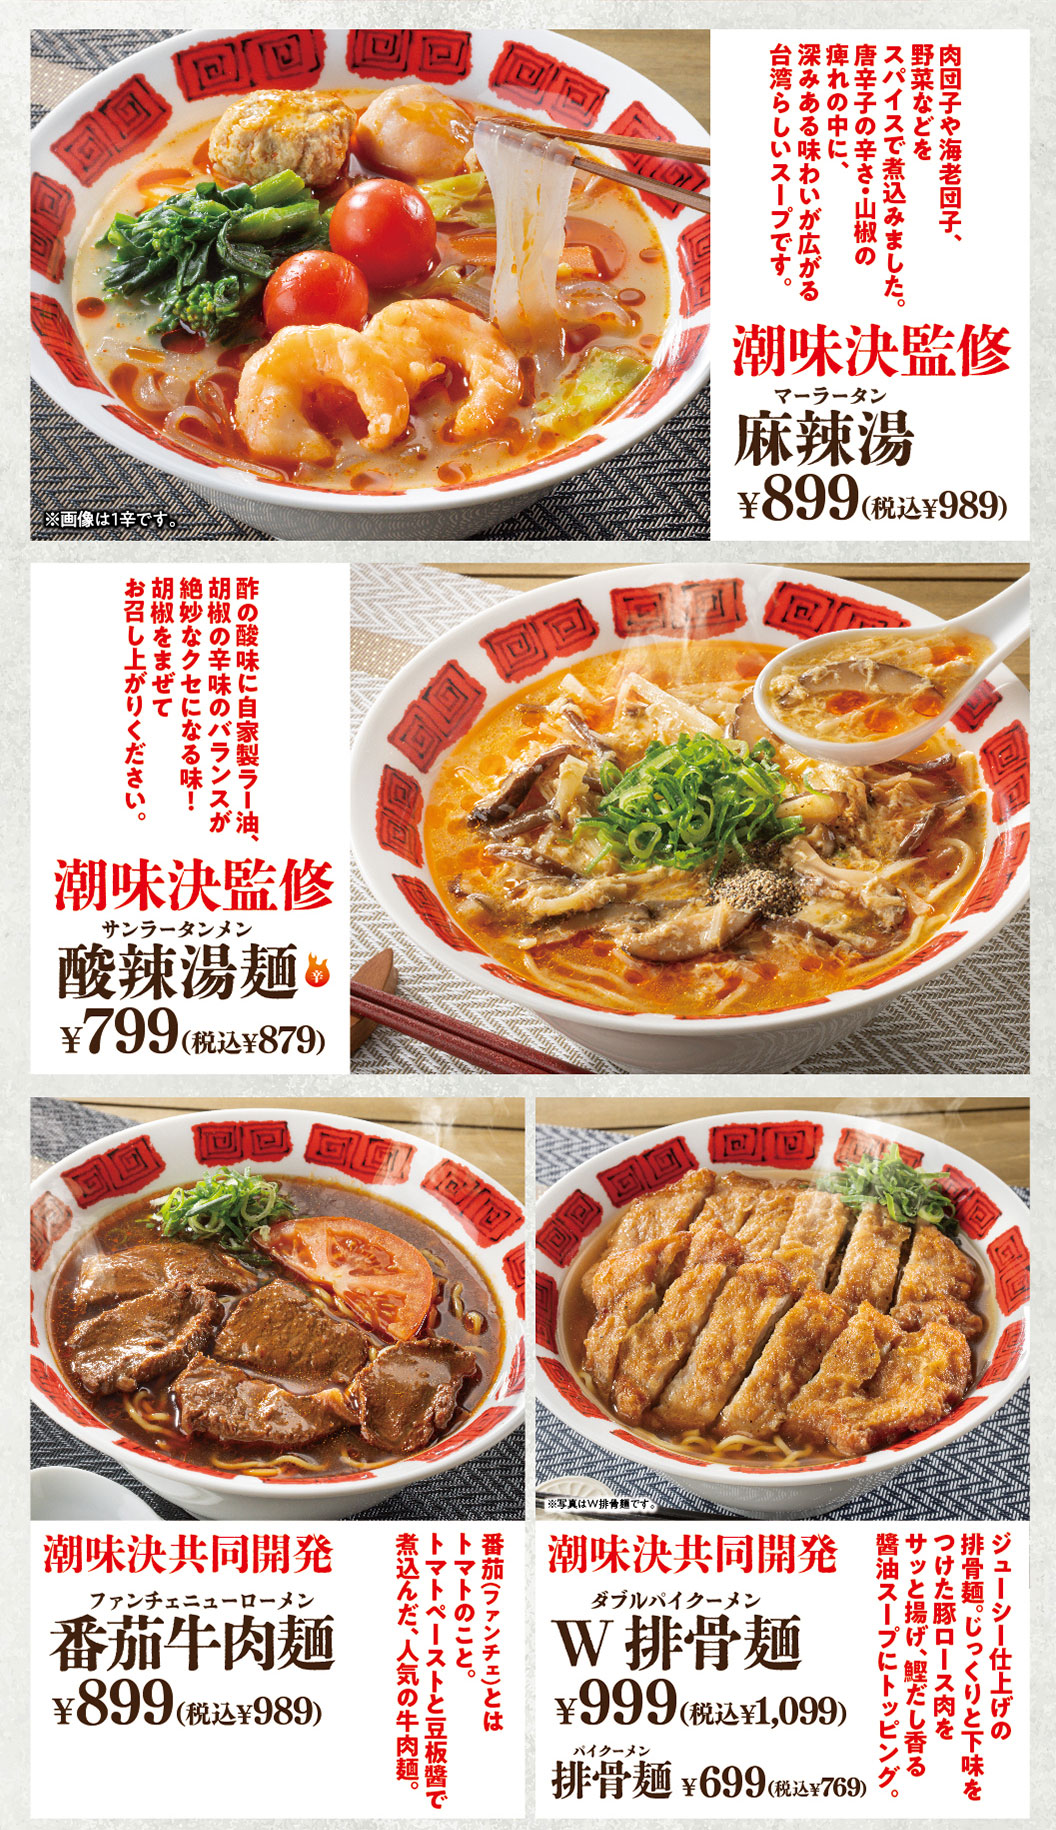 Shio-mi-ketsu's hot Hot and Sour Soup Noodles eggplant, beef noodles, pork chop noodles